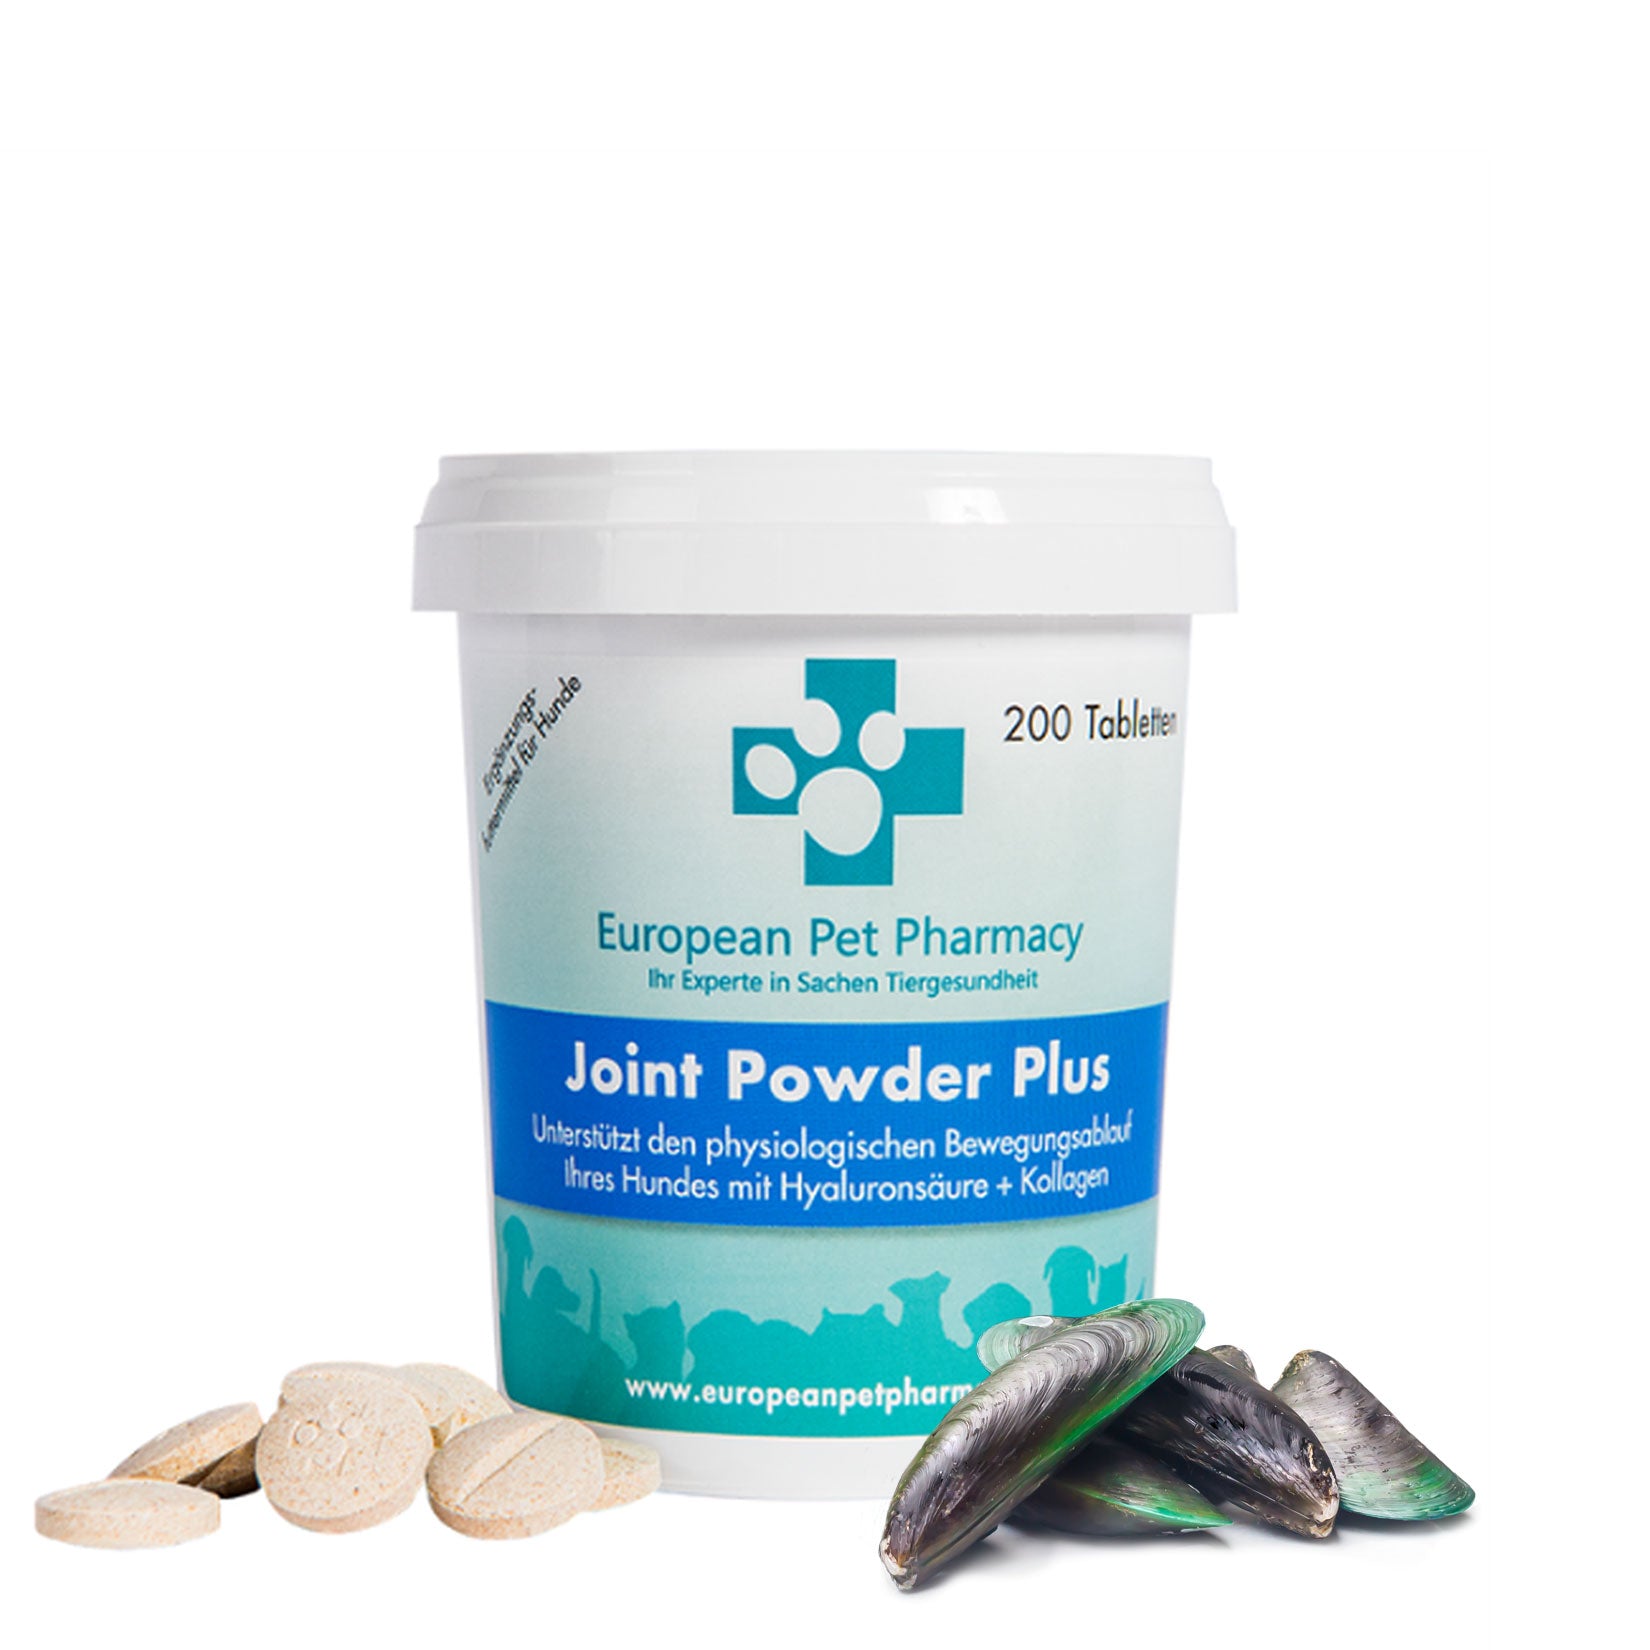 Joint Powder Plus 200 Tabletten - Unterstützt den physiologischen Bewegungsablauf Ihres Hundes mit Hyaluronsäure und Kollagen